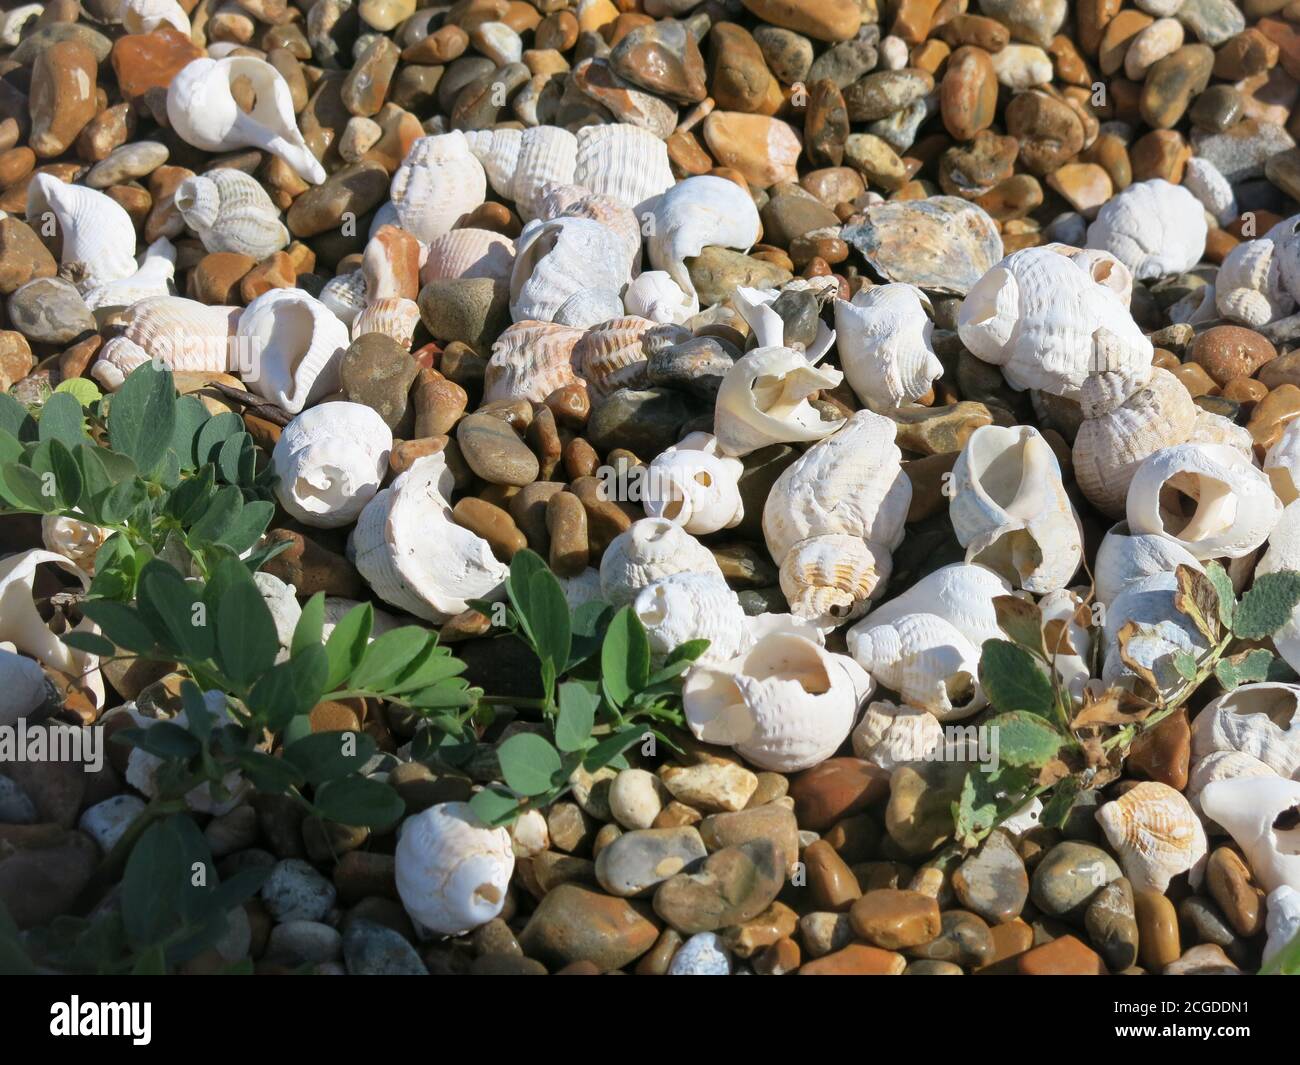 White whelks & seashells nestle among the pebbles and beach pea plants on a shingle bank; Shingle Street, Suffolk Stock Photo